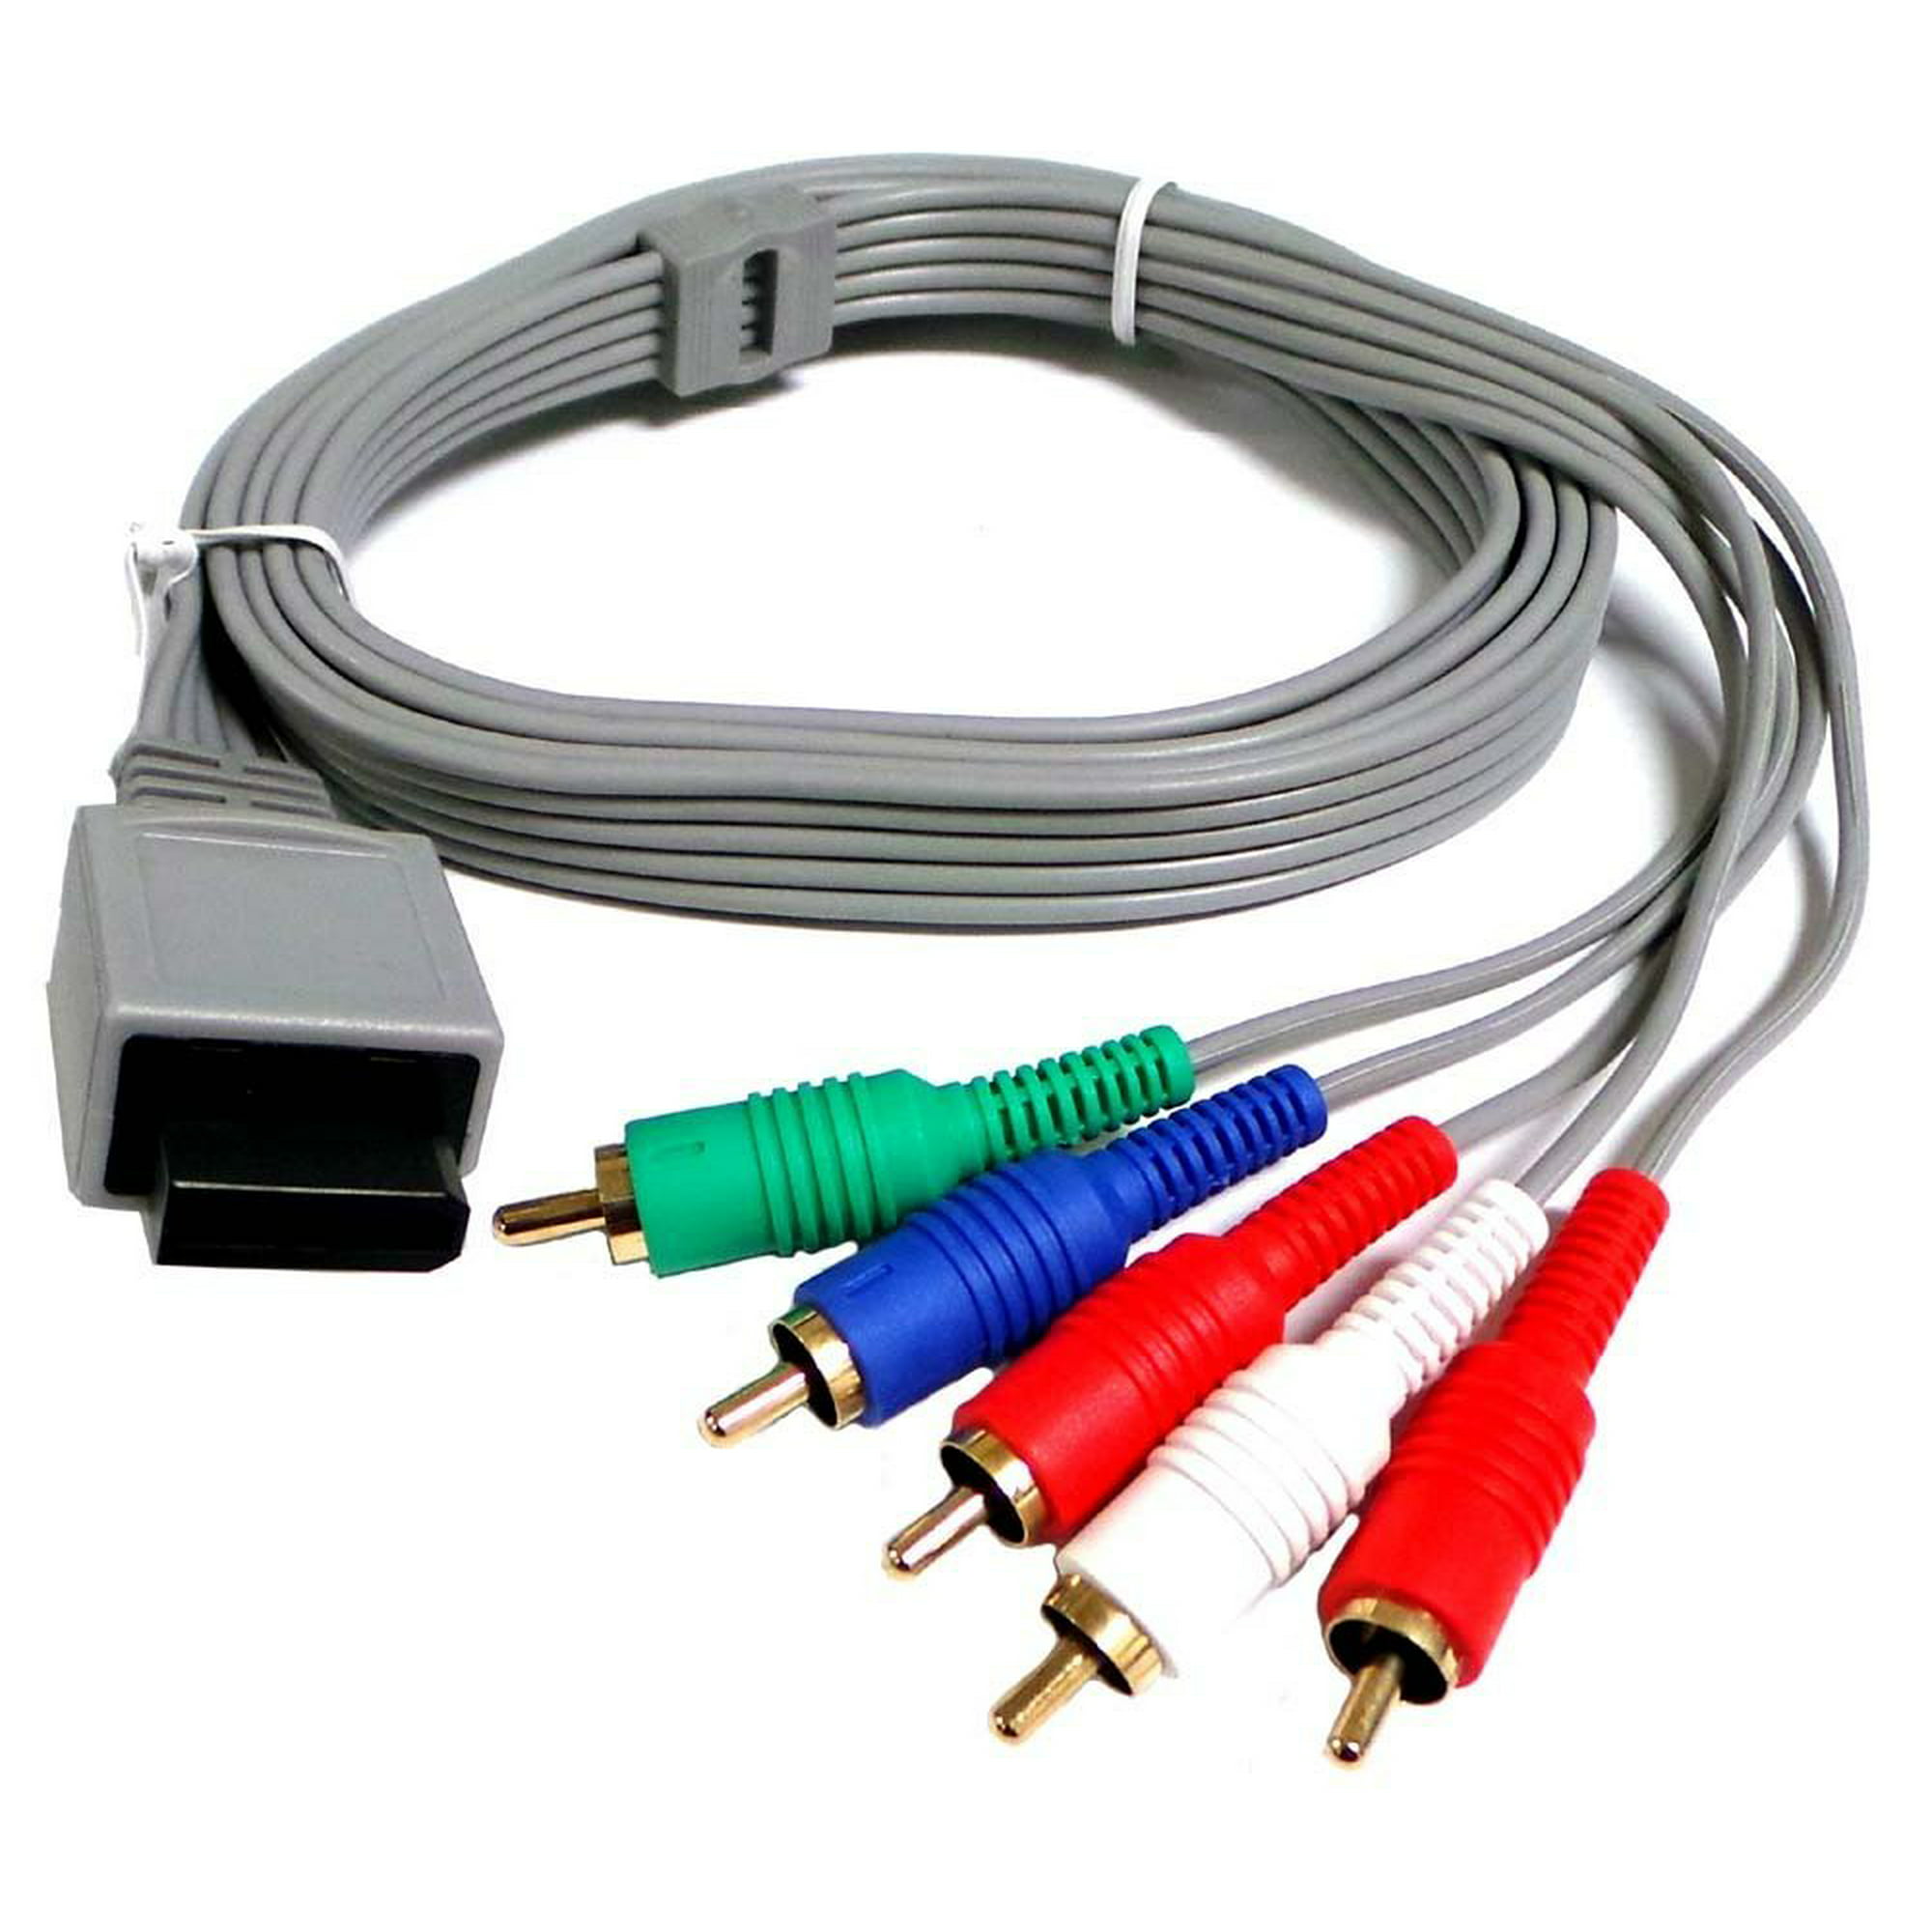 Кабель копирование. Nintendo Wii композитный кабель. Компонентный кабель Wii. Компонентный кабель Nintendo Wii Brooklyn. Компонентный кабель PPA 1210.